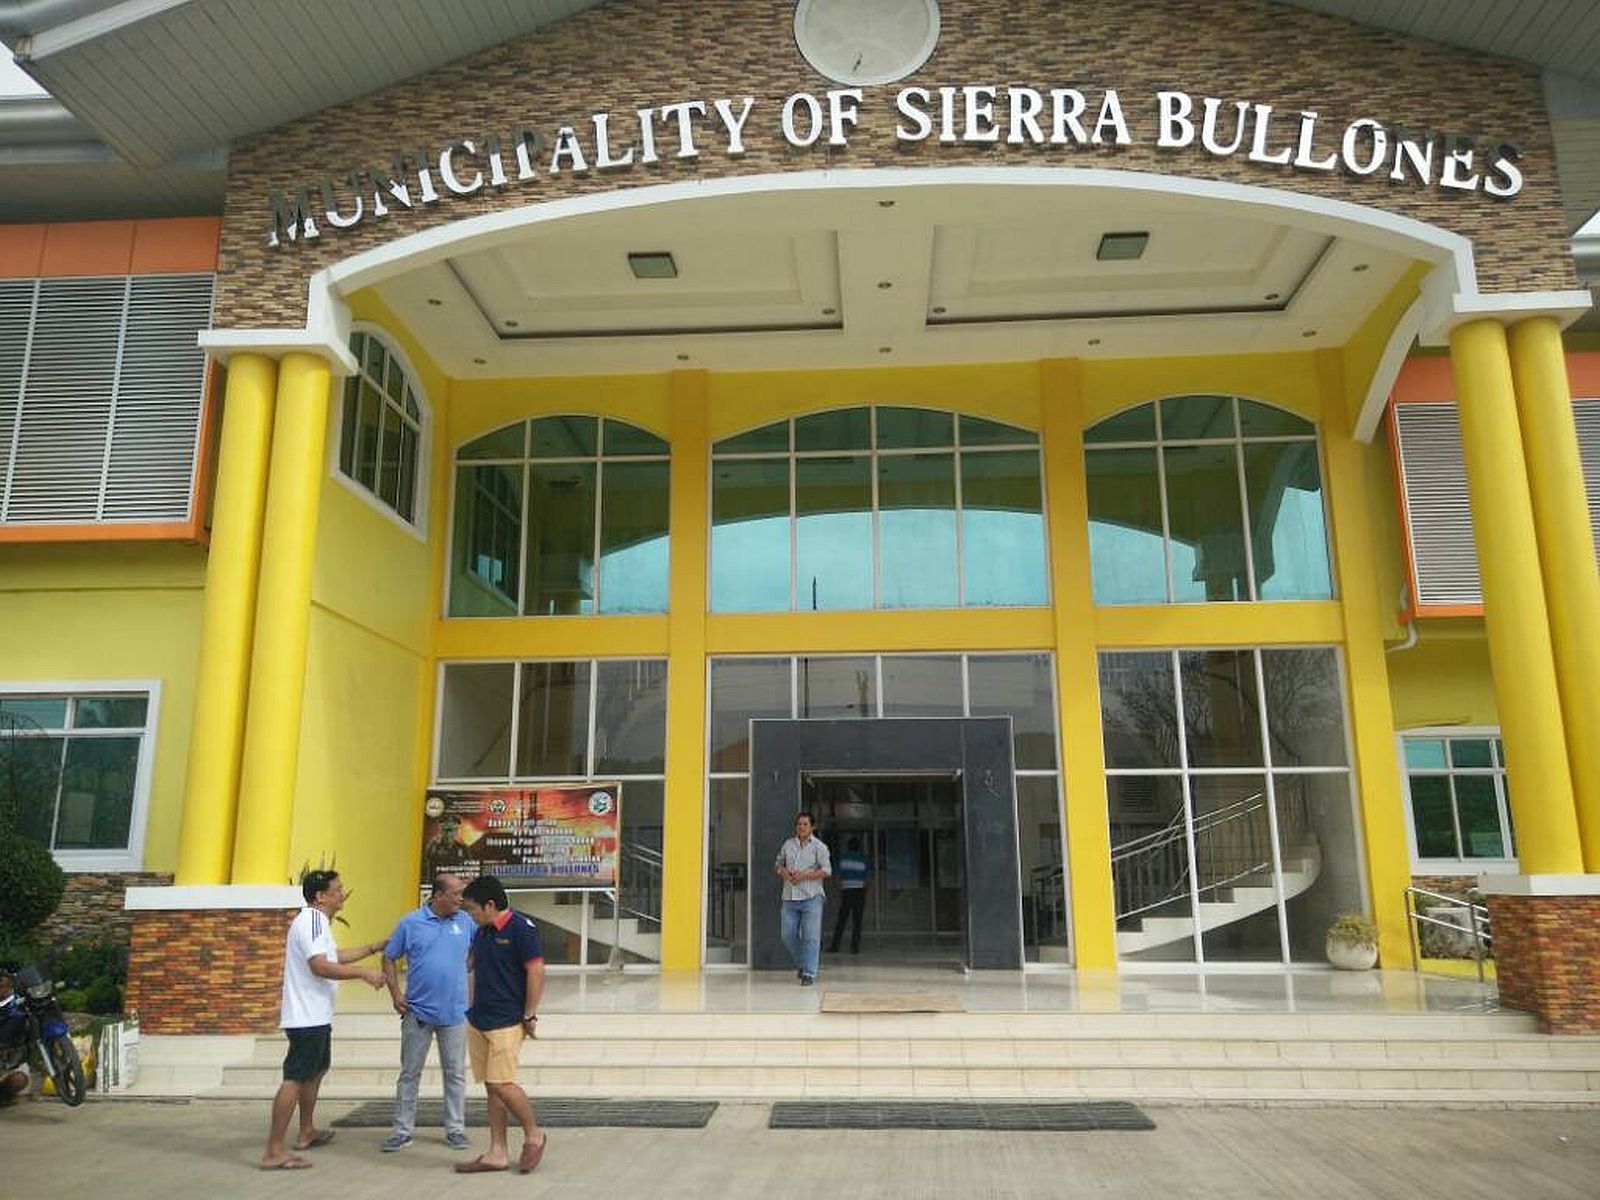 PHILIPPINEN REISEN - ORTE - BOHOL - Touristische Ortsbeschreibung für Sierra Bullones